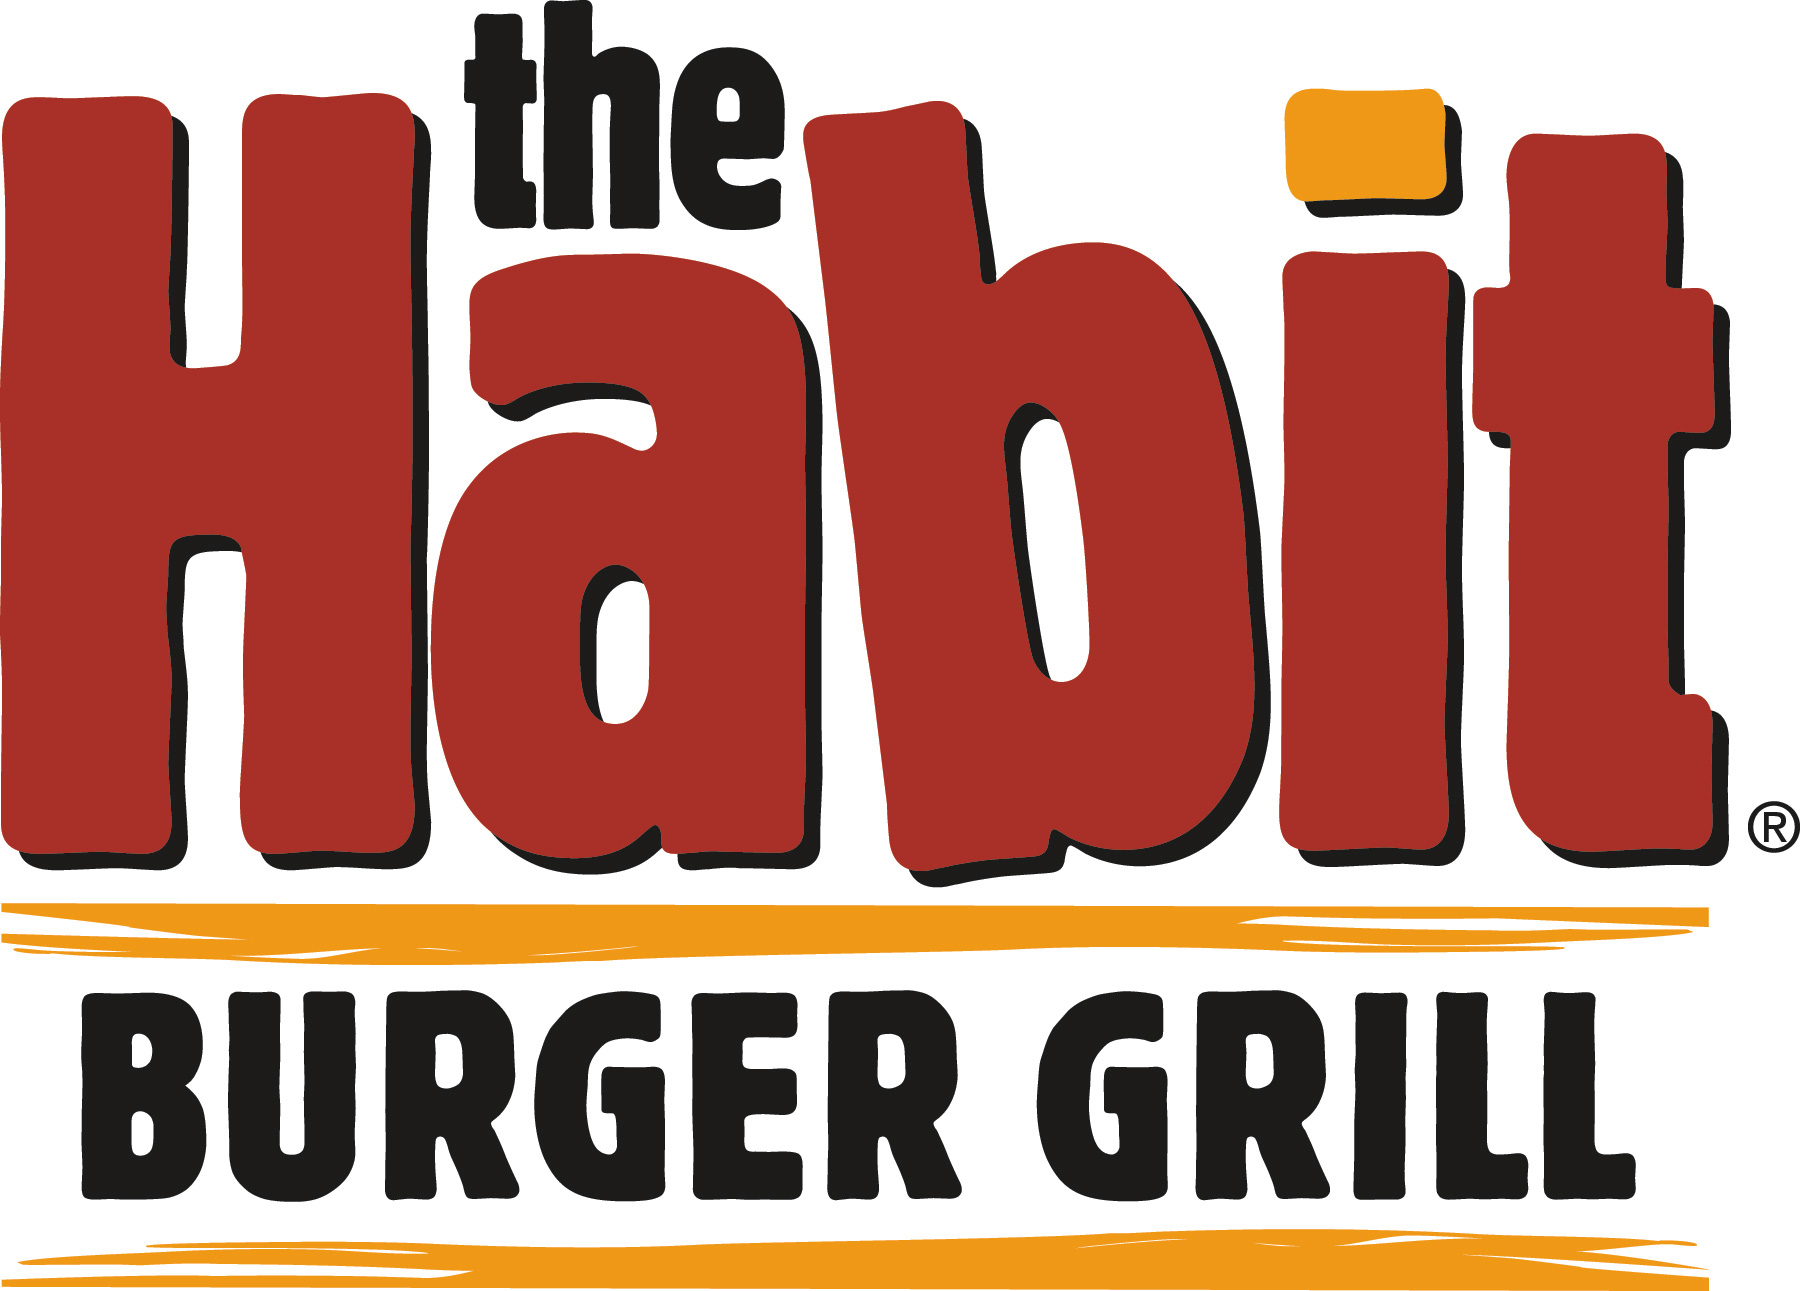 Habit-Burger